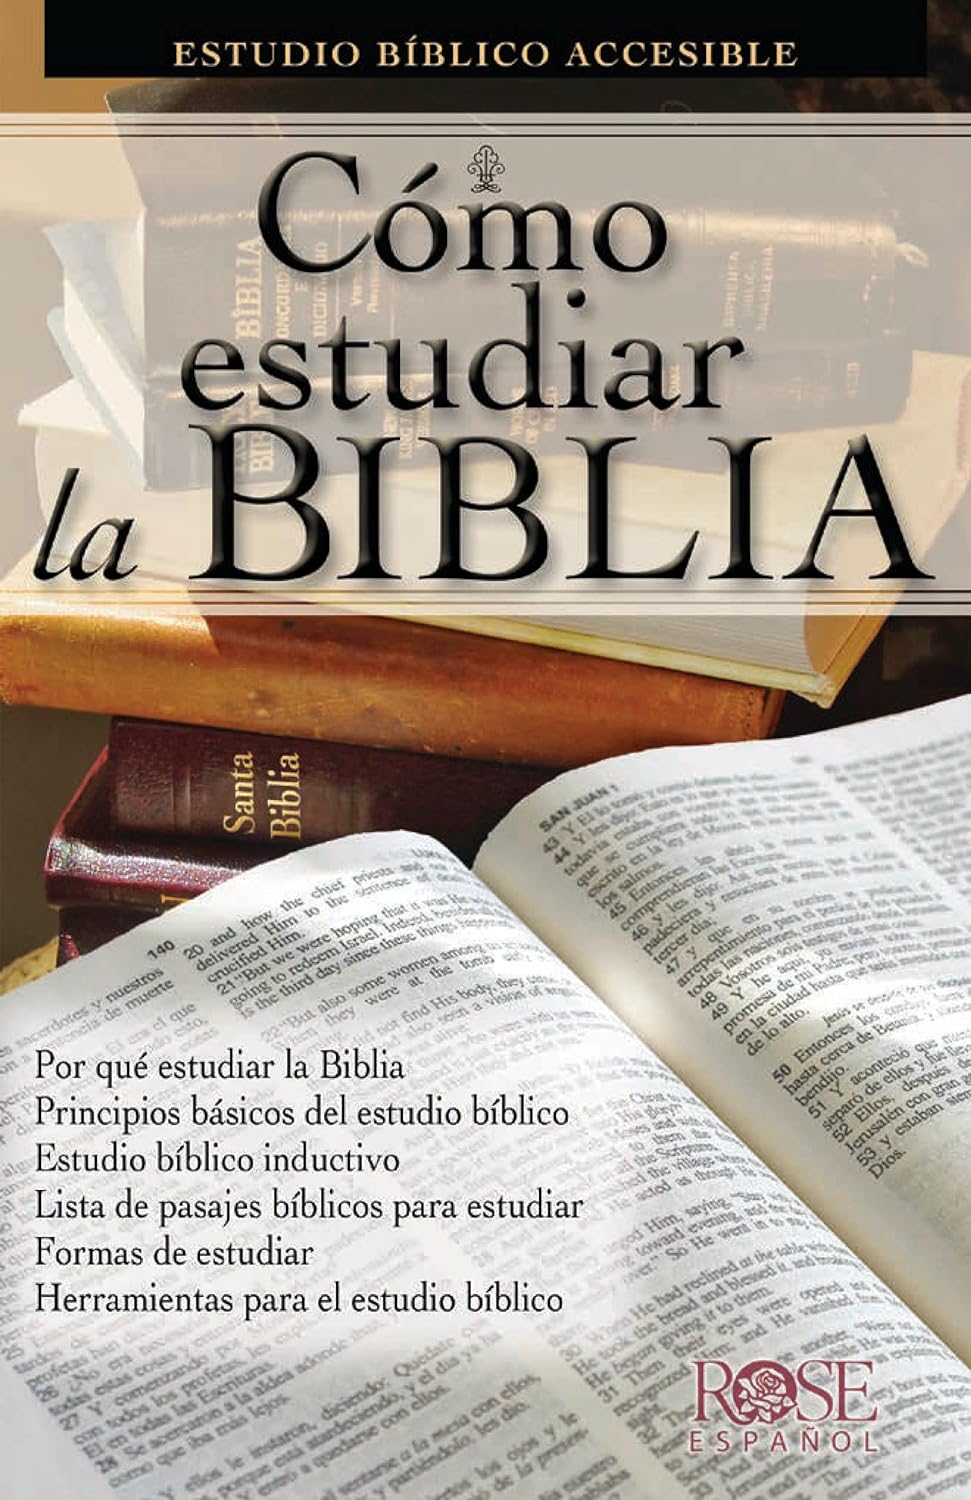 Cómo estudiar la Biblia: Estudio bíblico accesible (Spanish Edition)